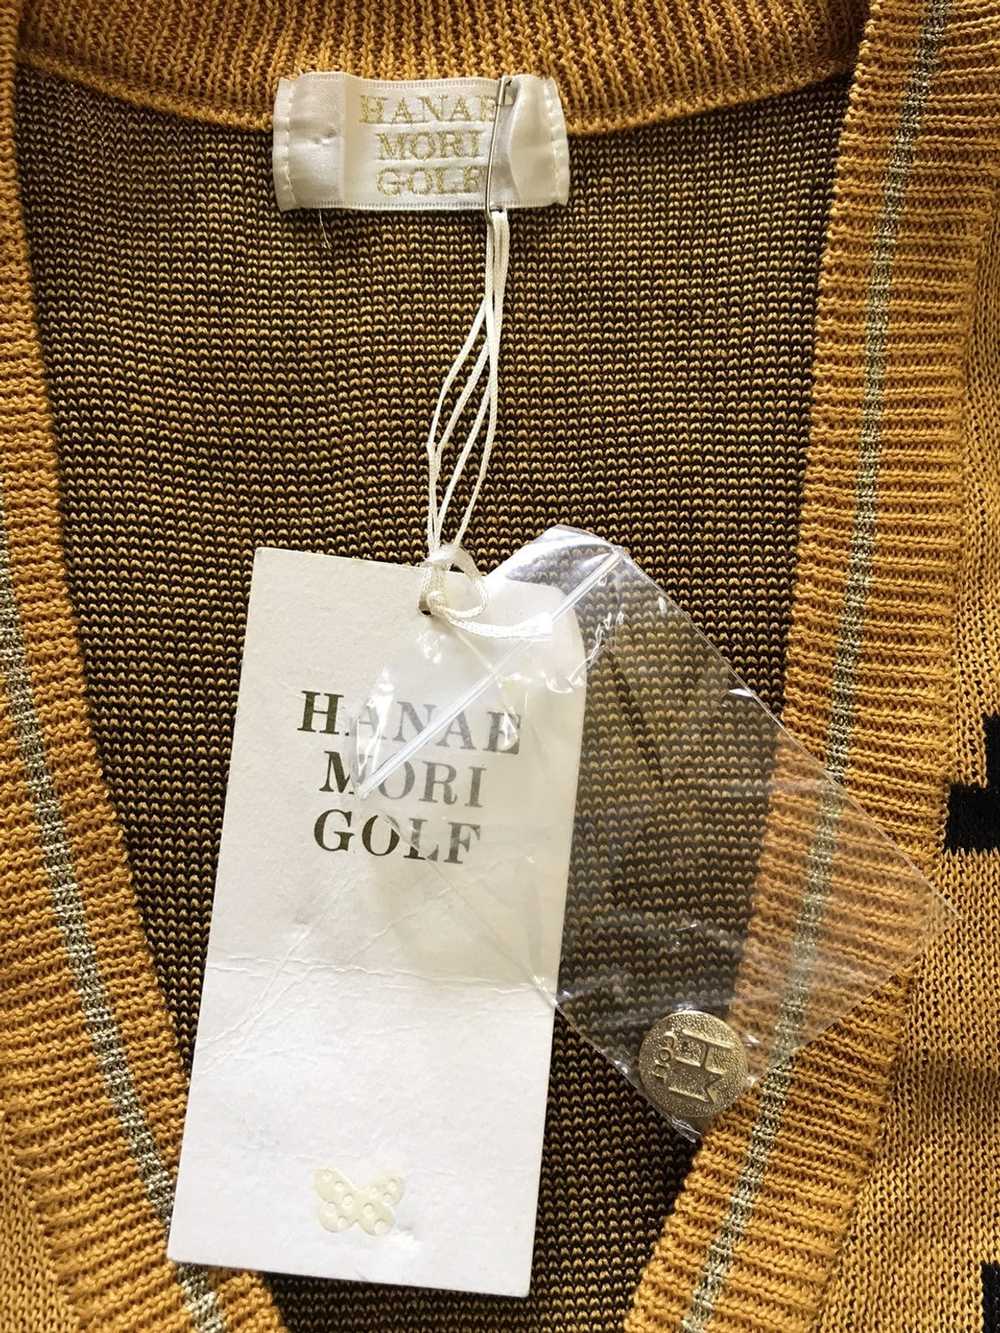 Hanae Mori Hanae Mori Golf Abstract Design Vest - image 3